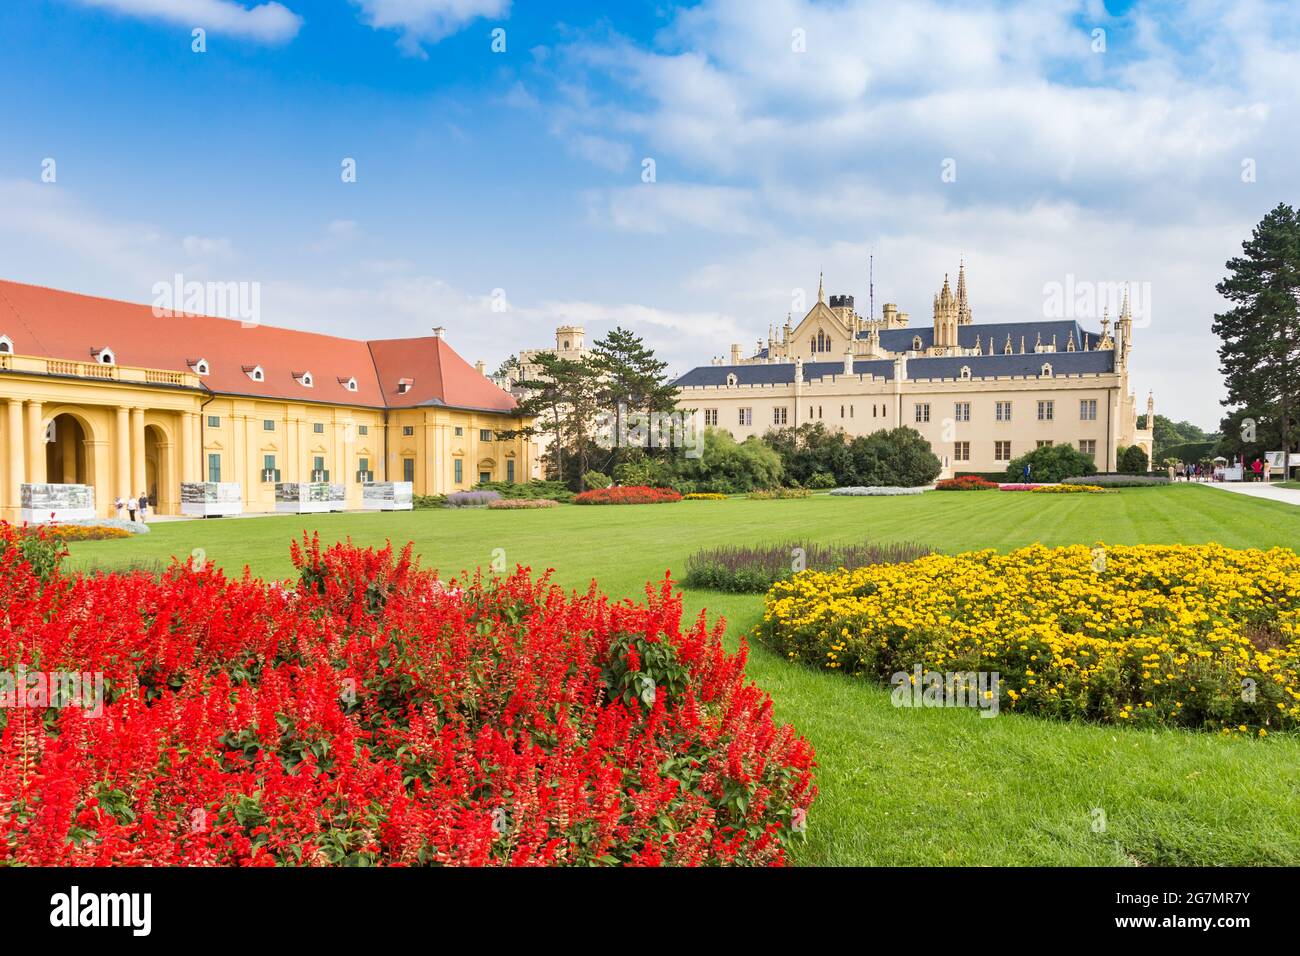 Fleurs rouges et douces dans le jardin du château de Lednice, République tchèque Banque D'Images